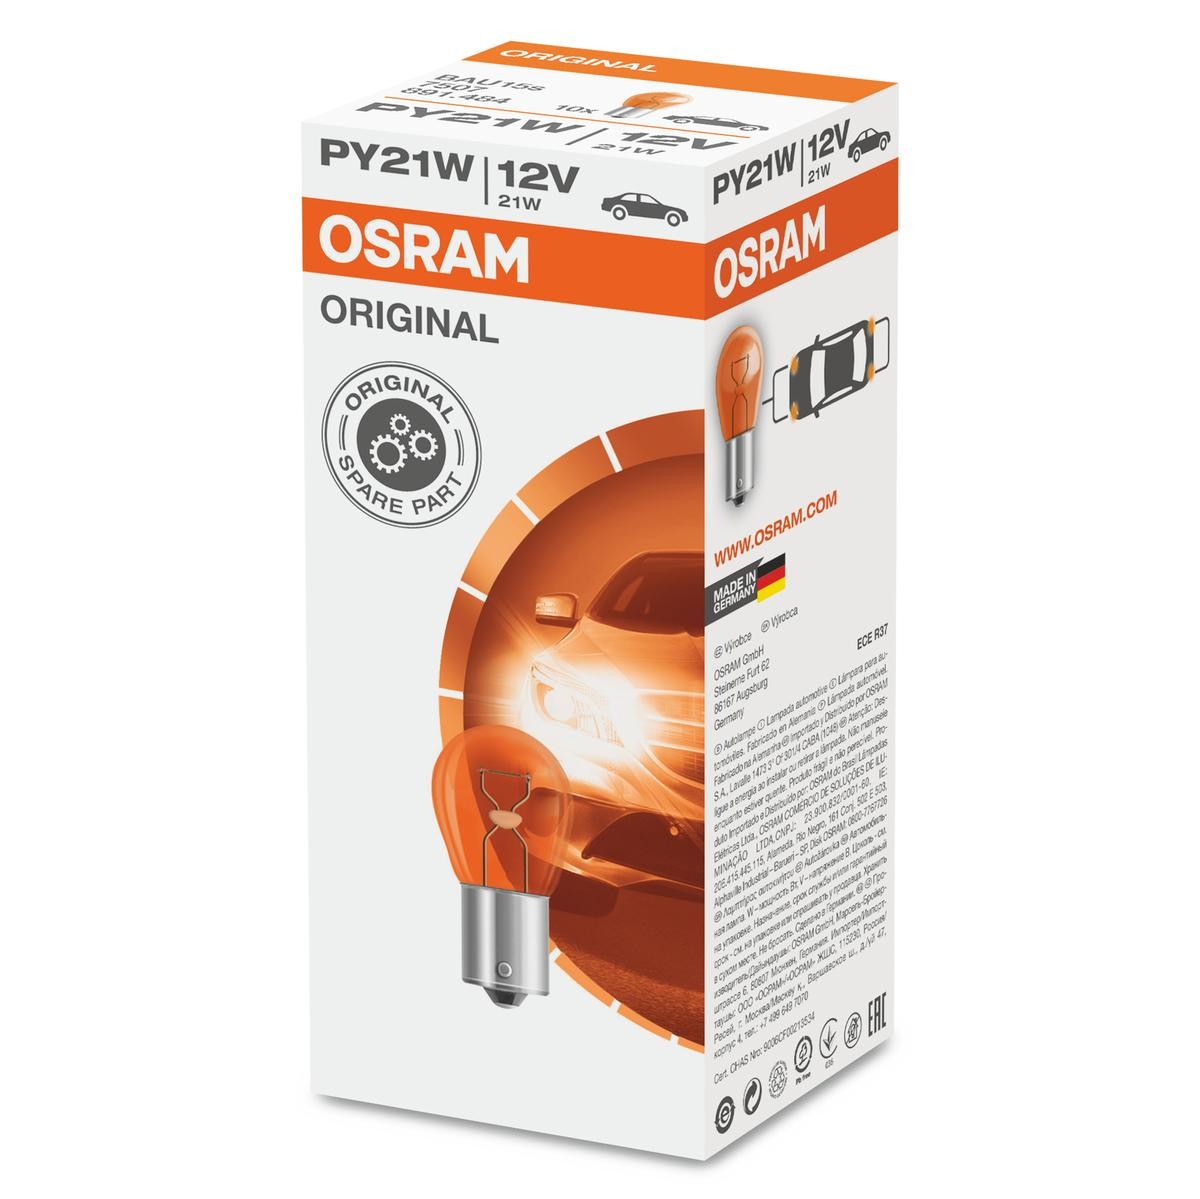 OSRAM Autoteile, Autozubehör - Originalprodukte in unserem Onlinekatalog  kaufen